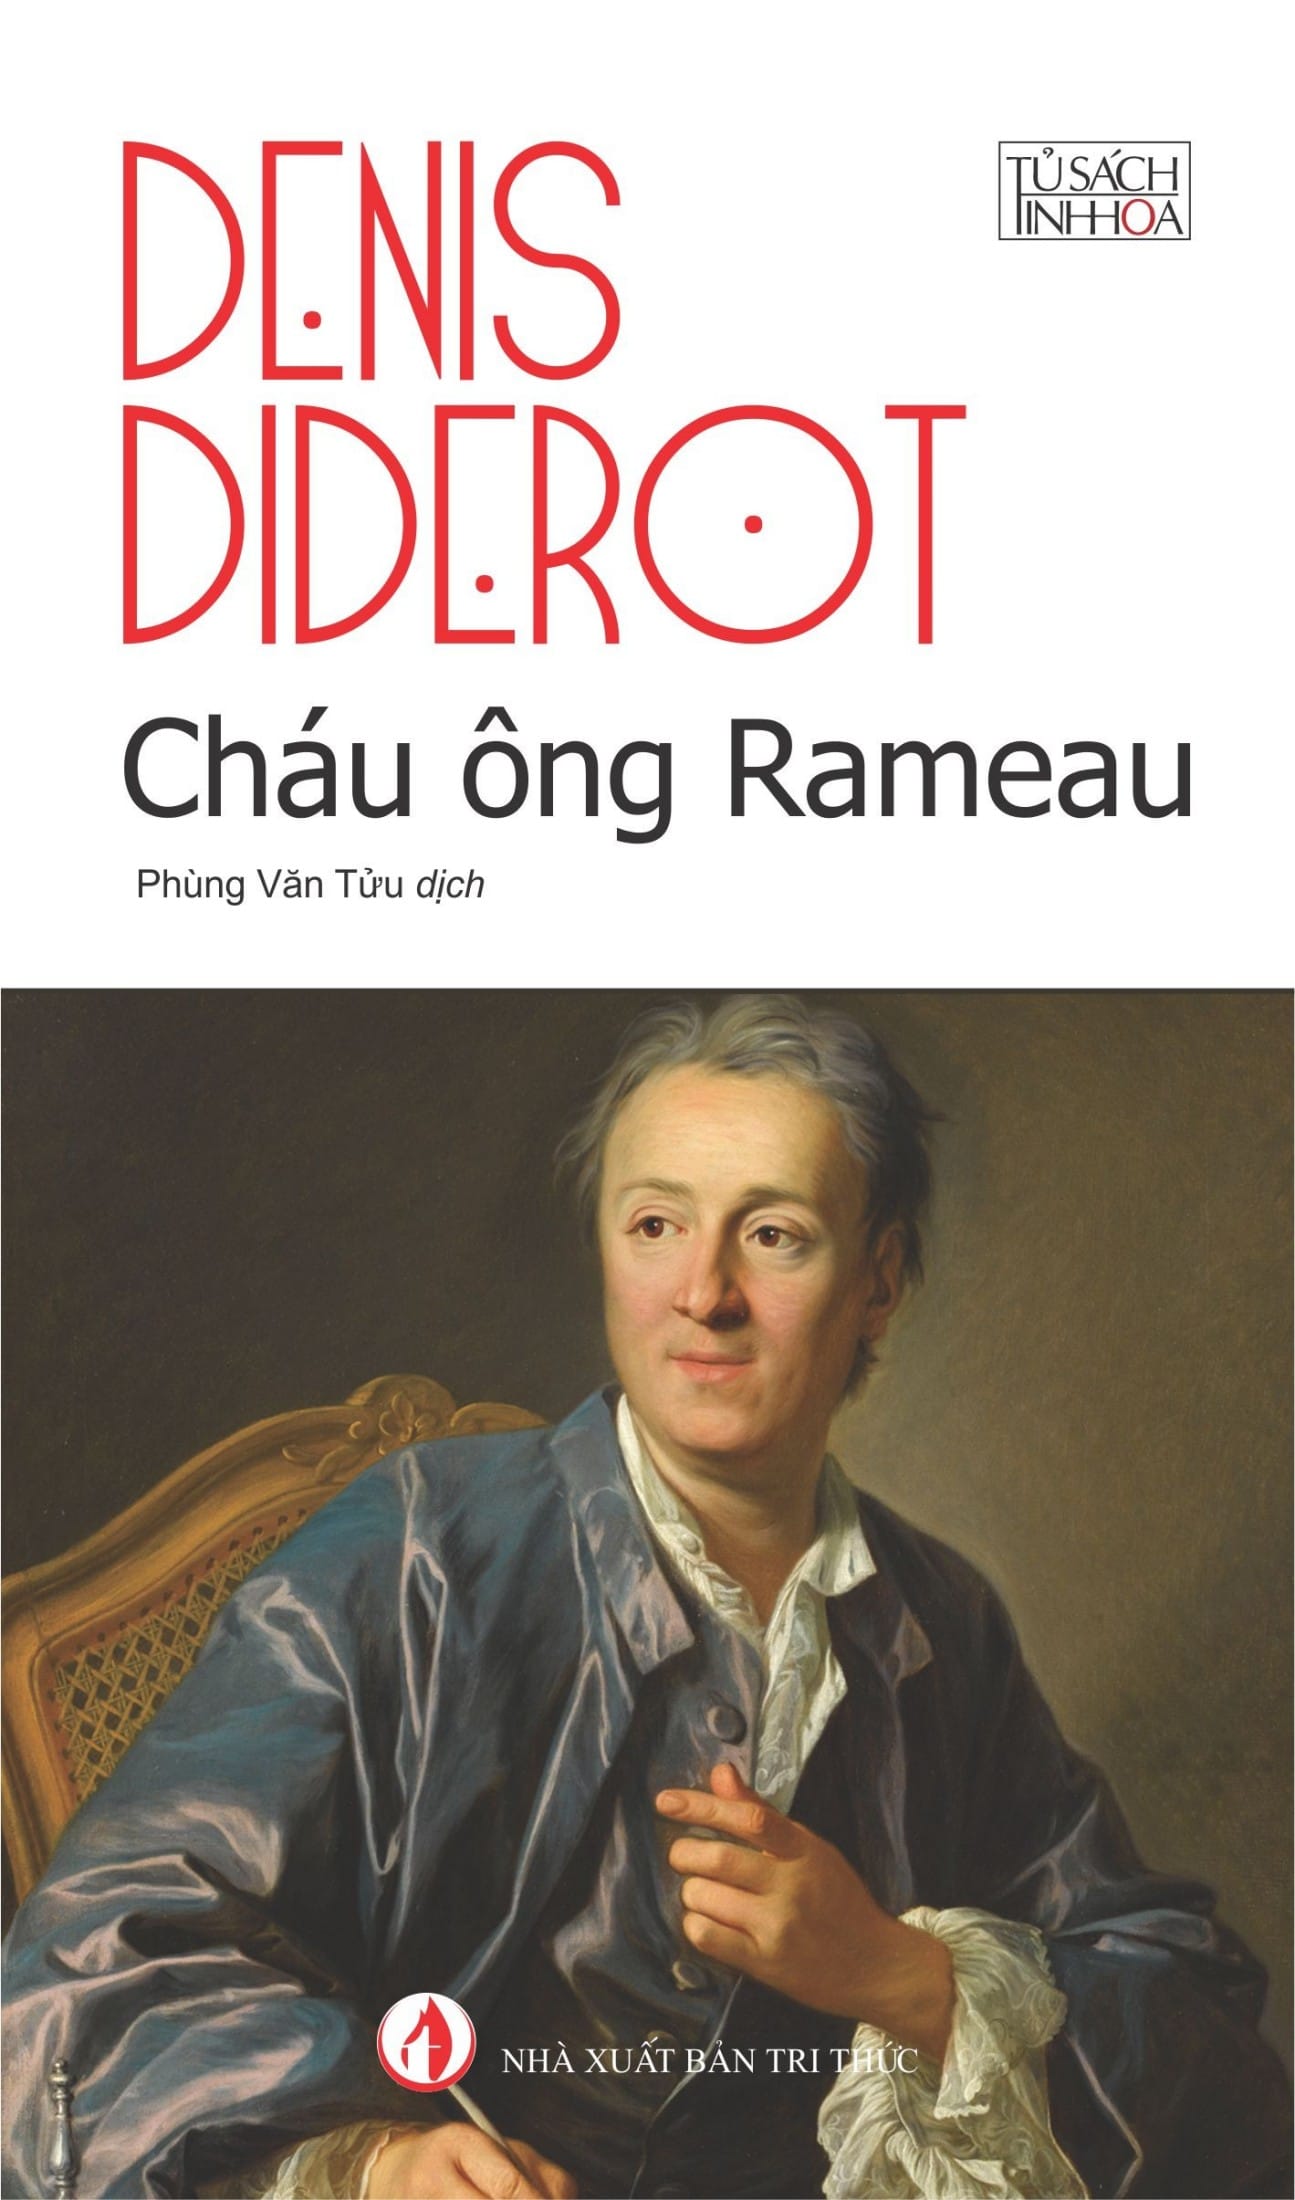 Cháu ông Rameau - Denis Diderot